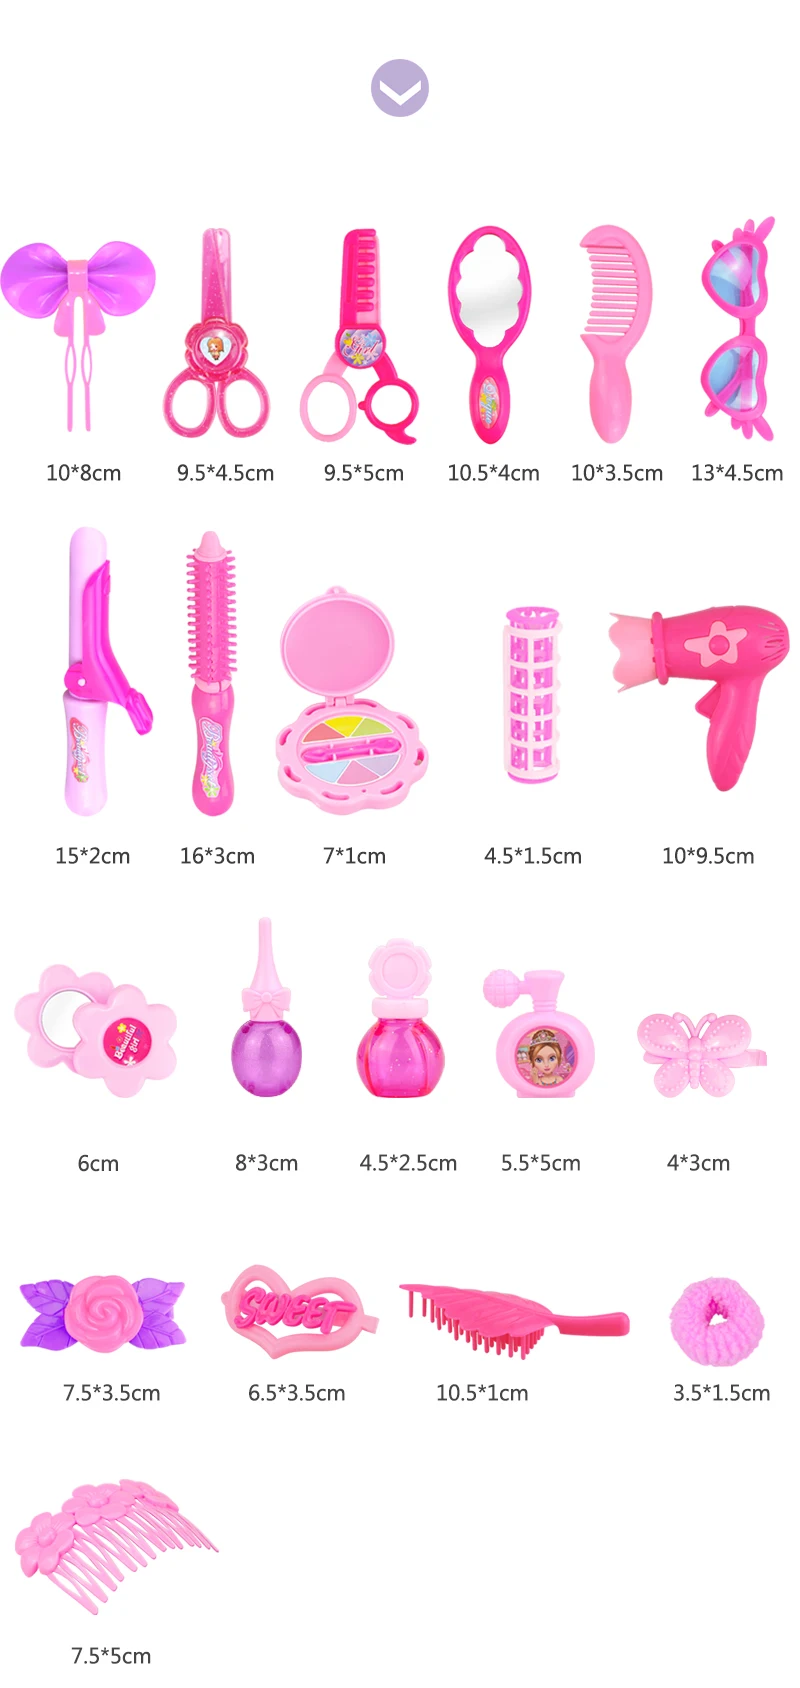 24-32 шт. ролевые игры Kid игрушки для макияжа розовый макияж набор принцесса парикмахерские моделирование пластиковая игрушка для девочек